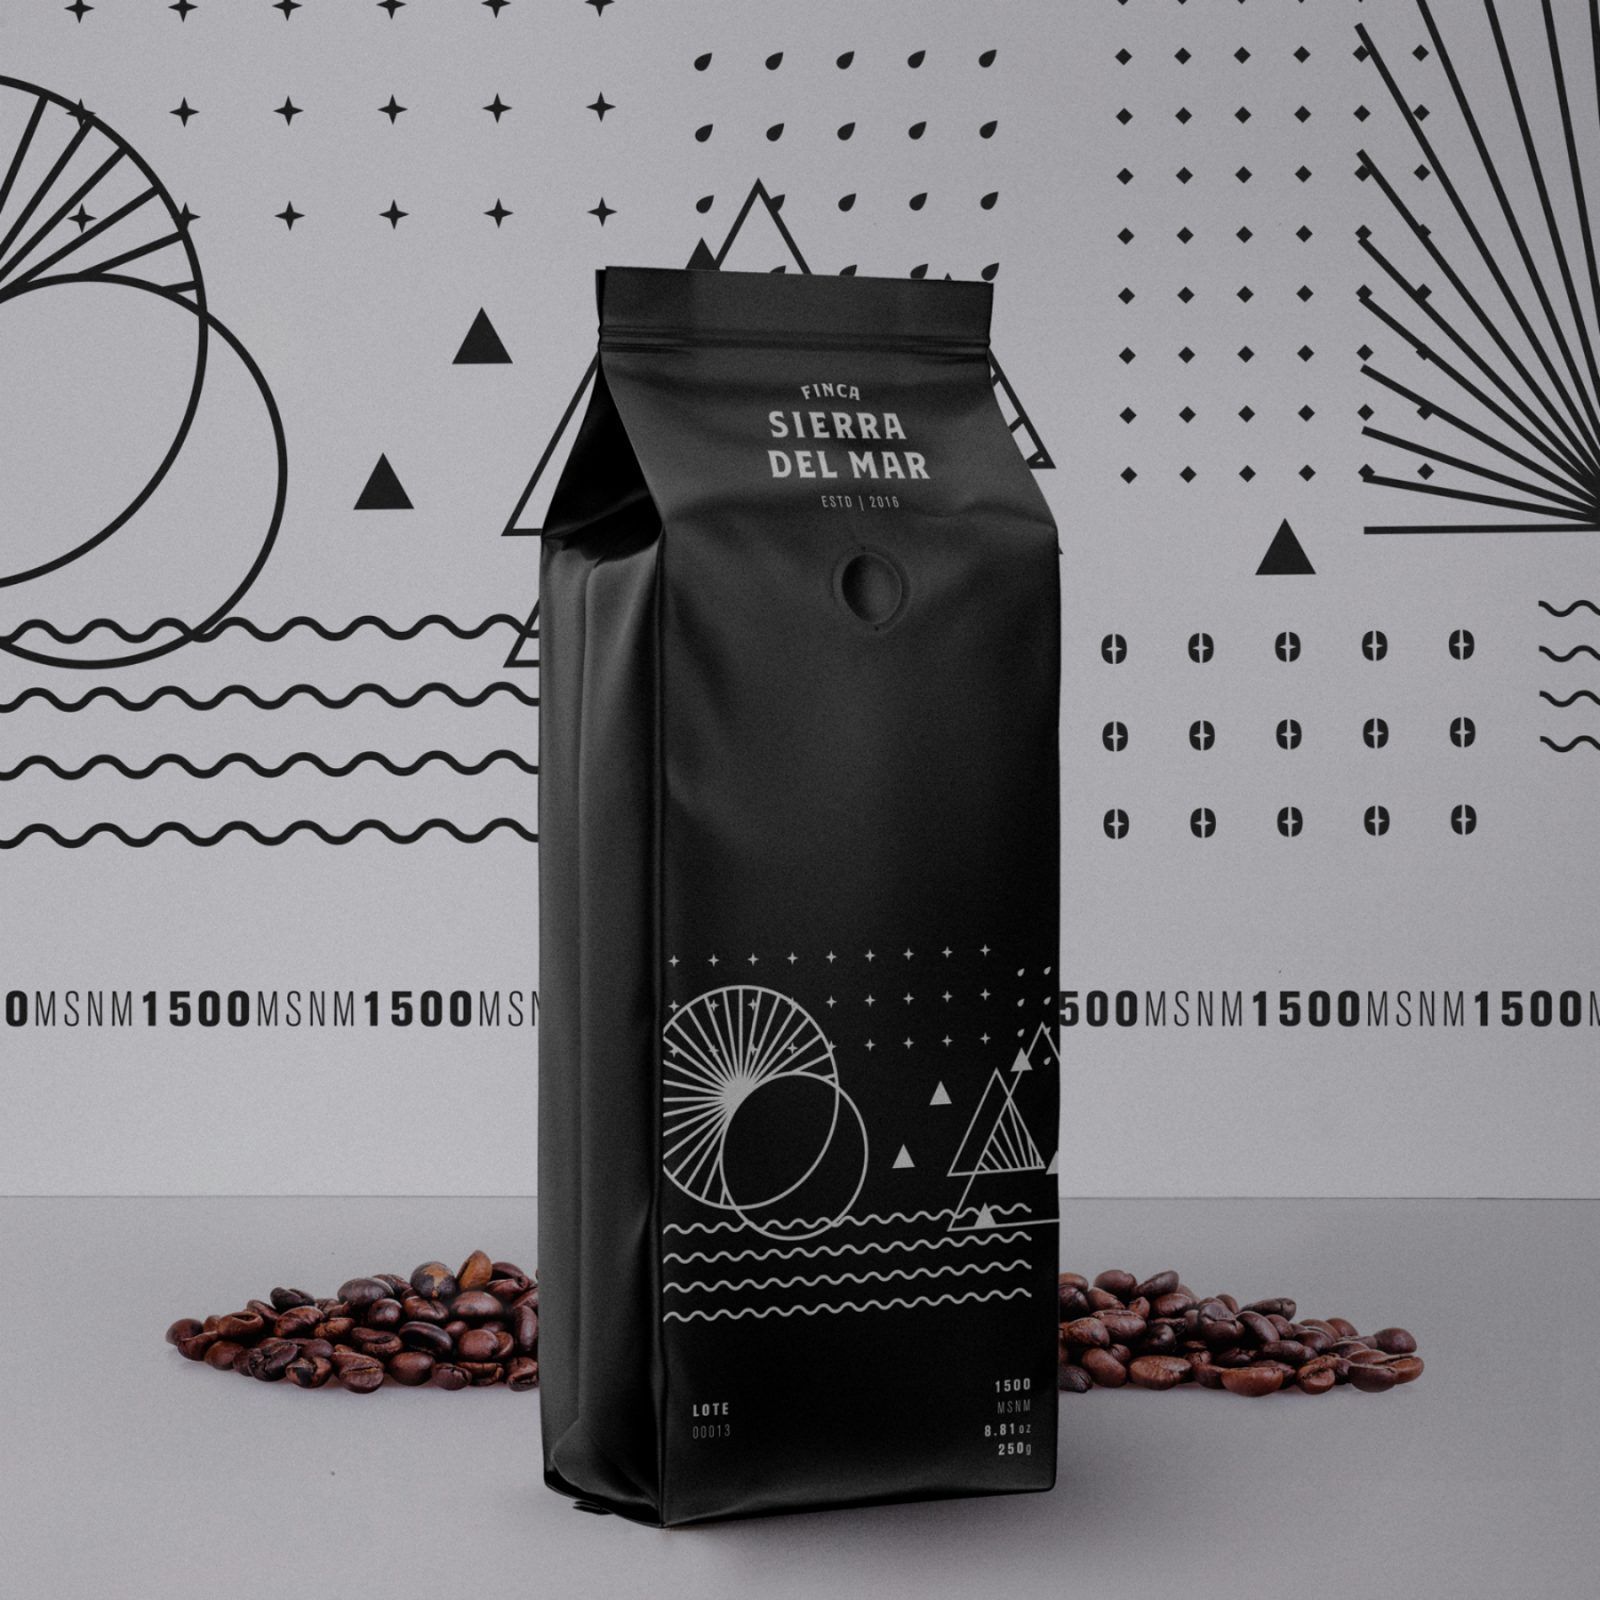 Packaging of a Coffe Brand Finca Sierra del Mar